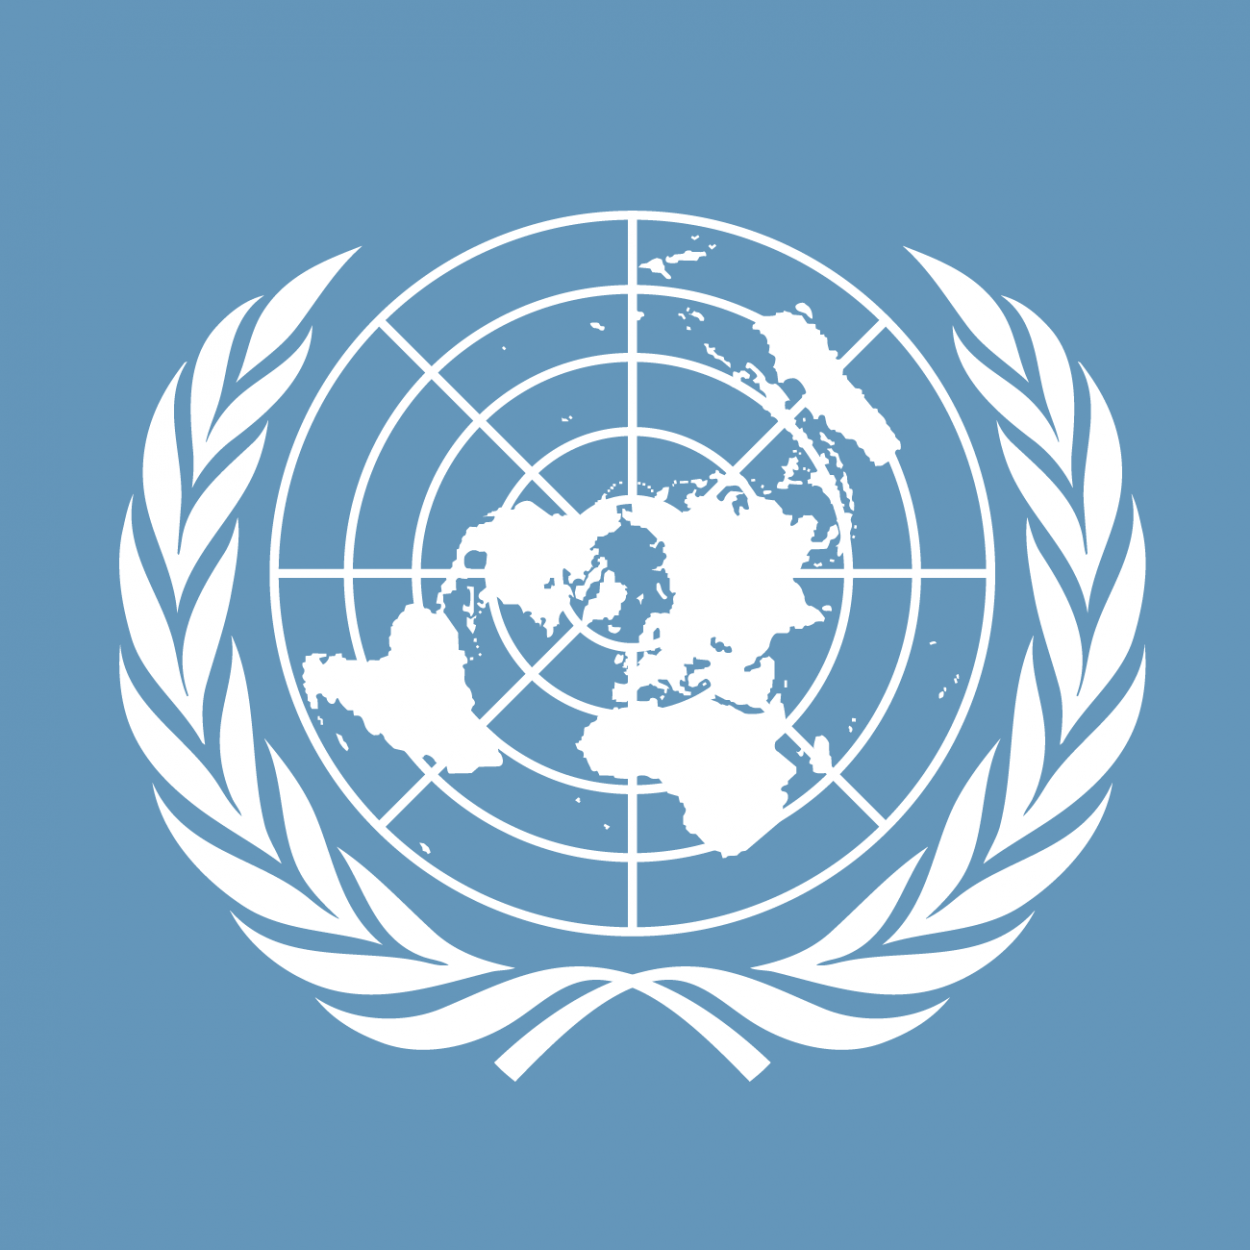 ООН. Флаг ООН. ООН лого. Совет безопасности ООН эмблема.